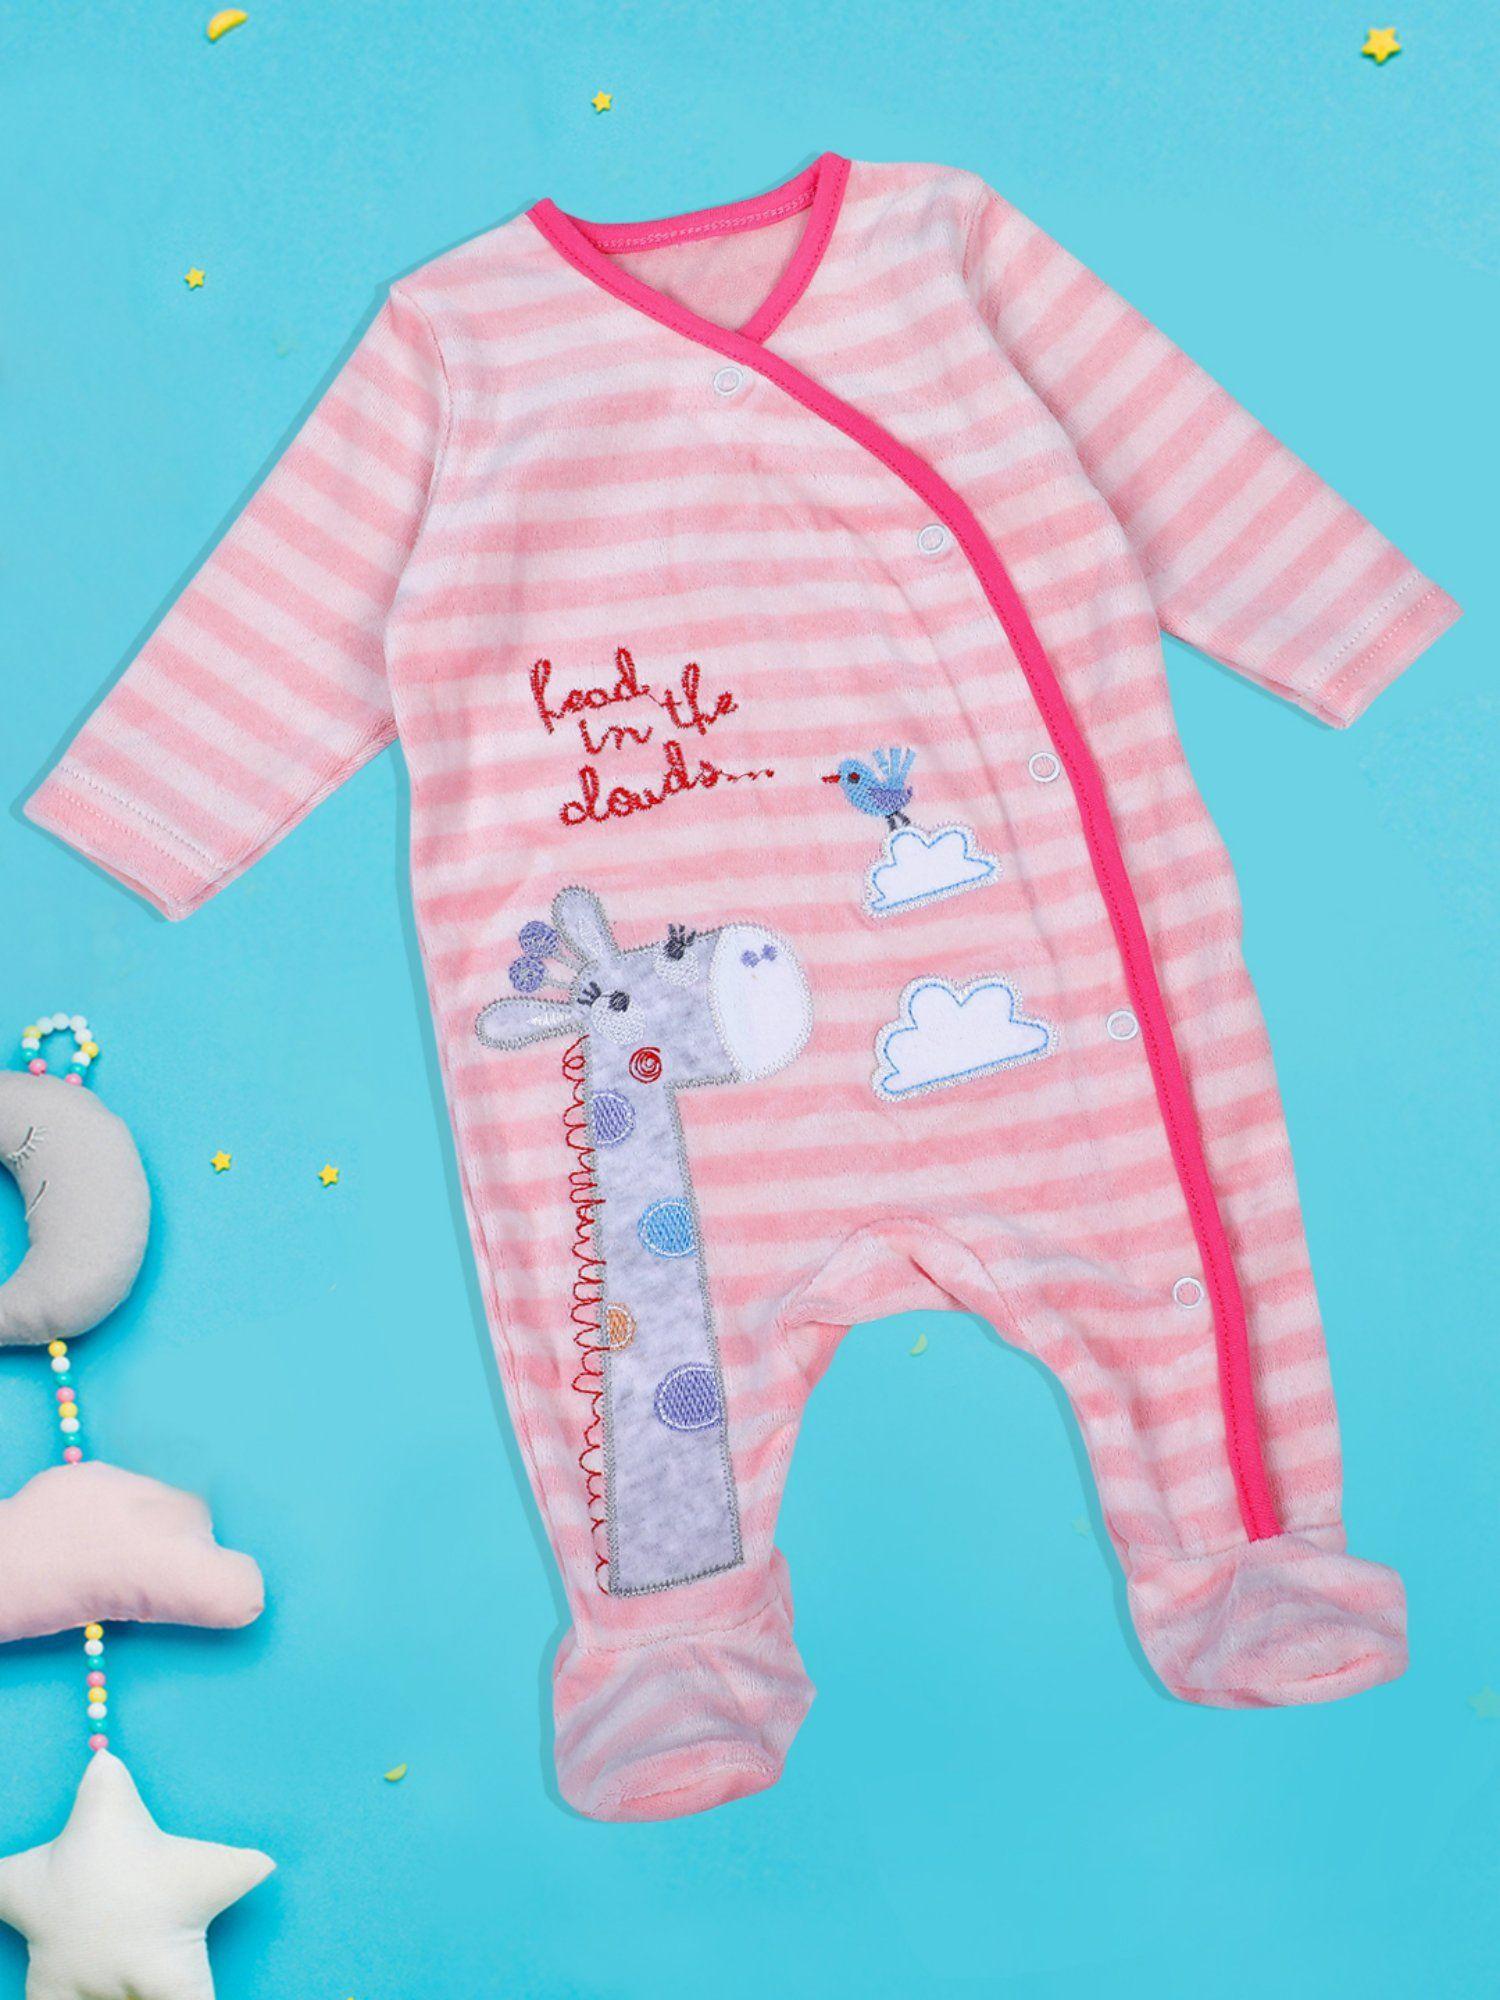 giraffe-striped-infant-full-sleeves-snap-button-bodysuit-romper-pink